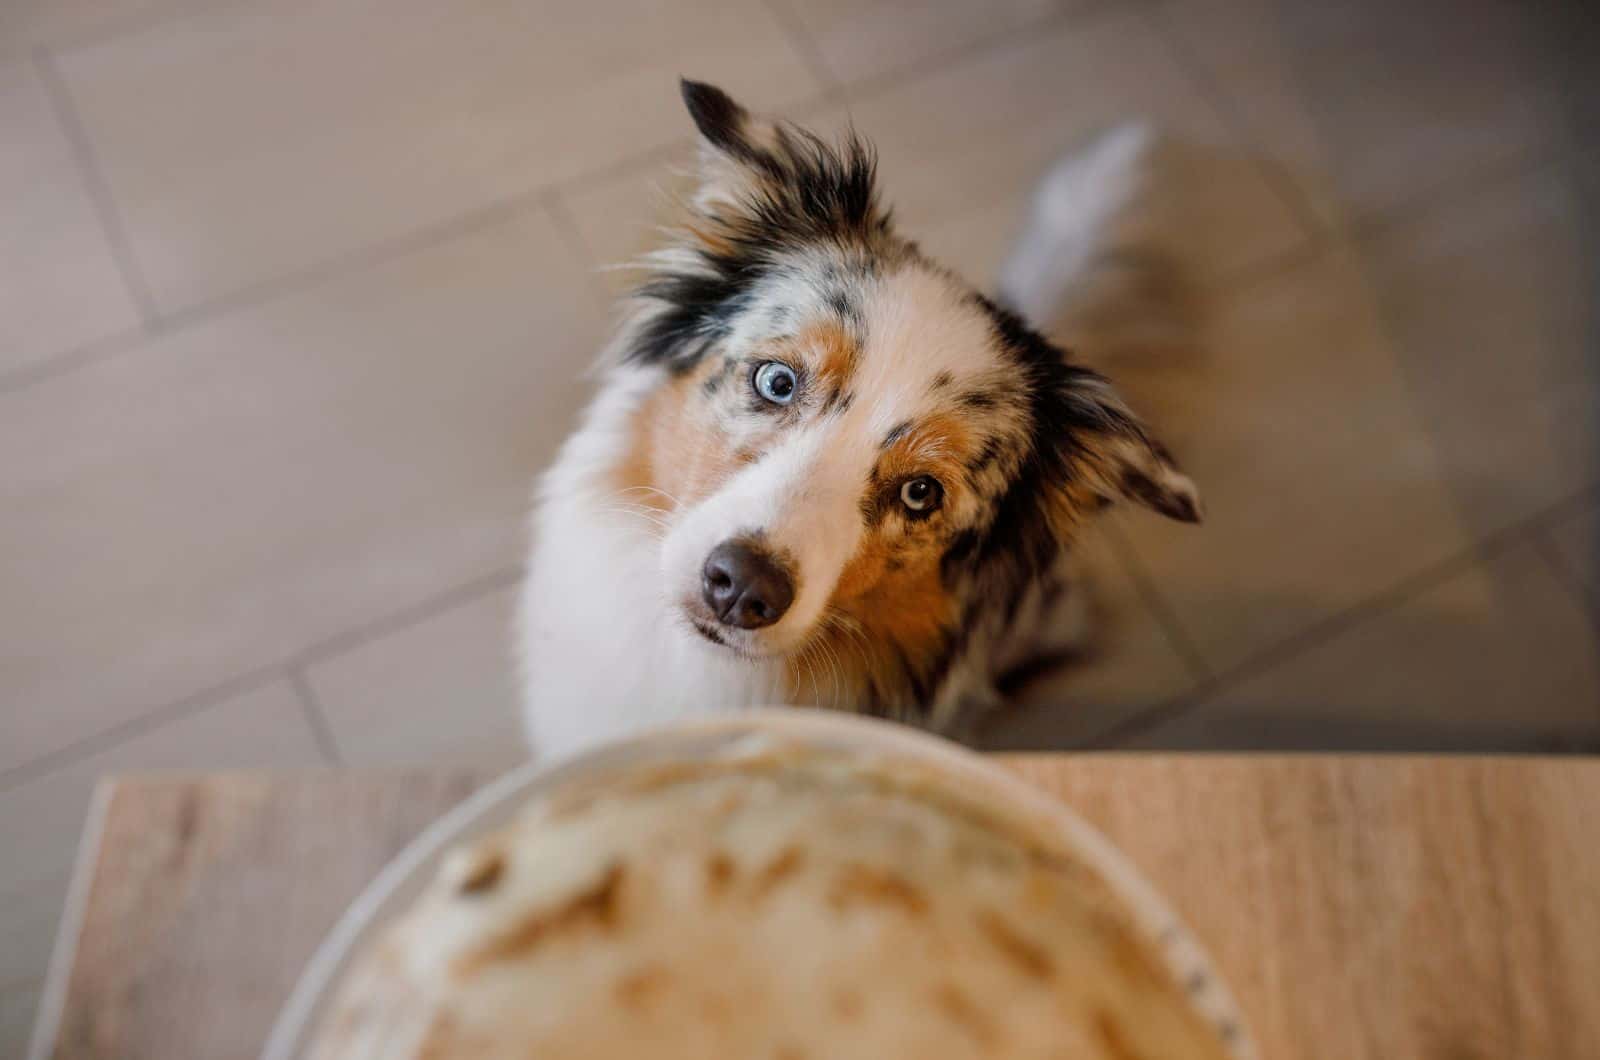 Australian Shepherd looking up at his food